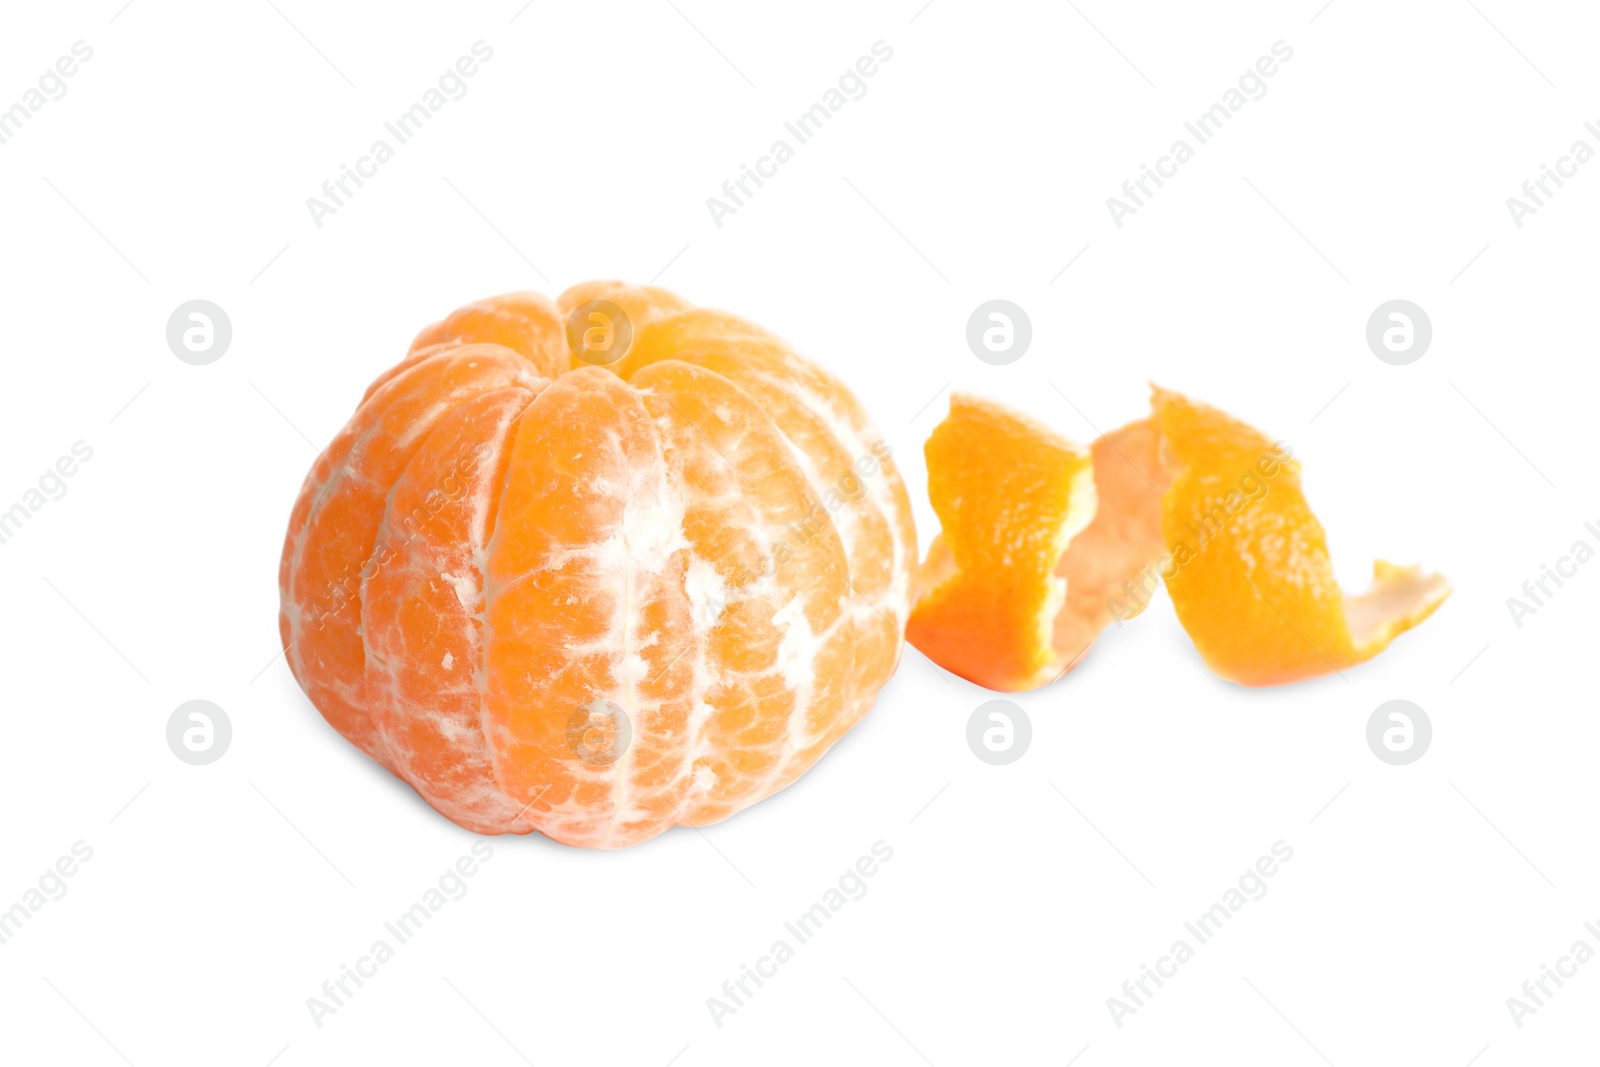 Photo of Peeled fresh juicy tangerine with zest isolated on white